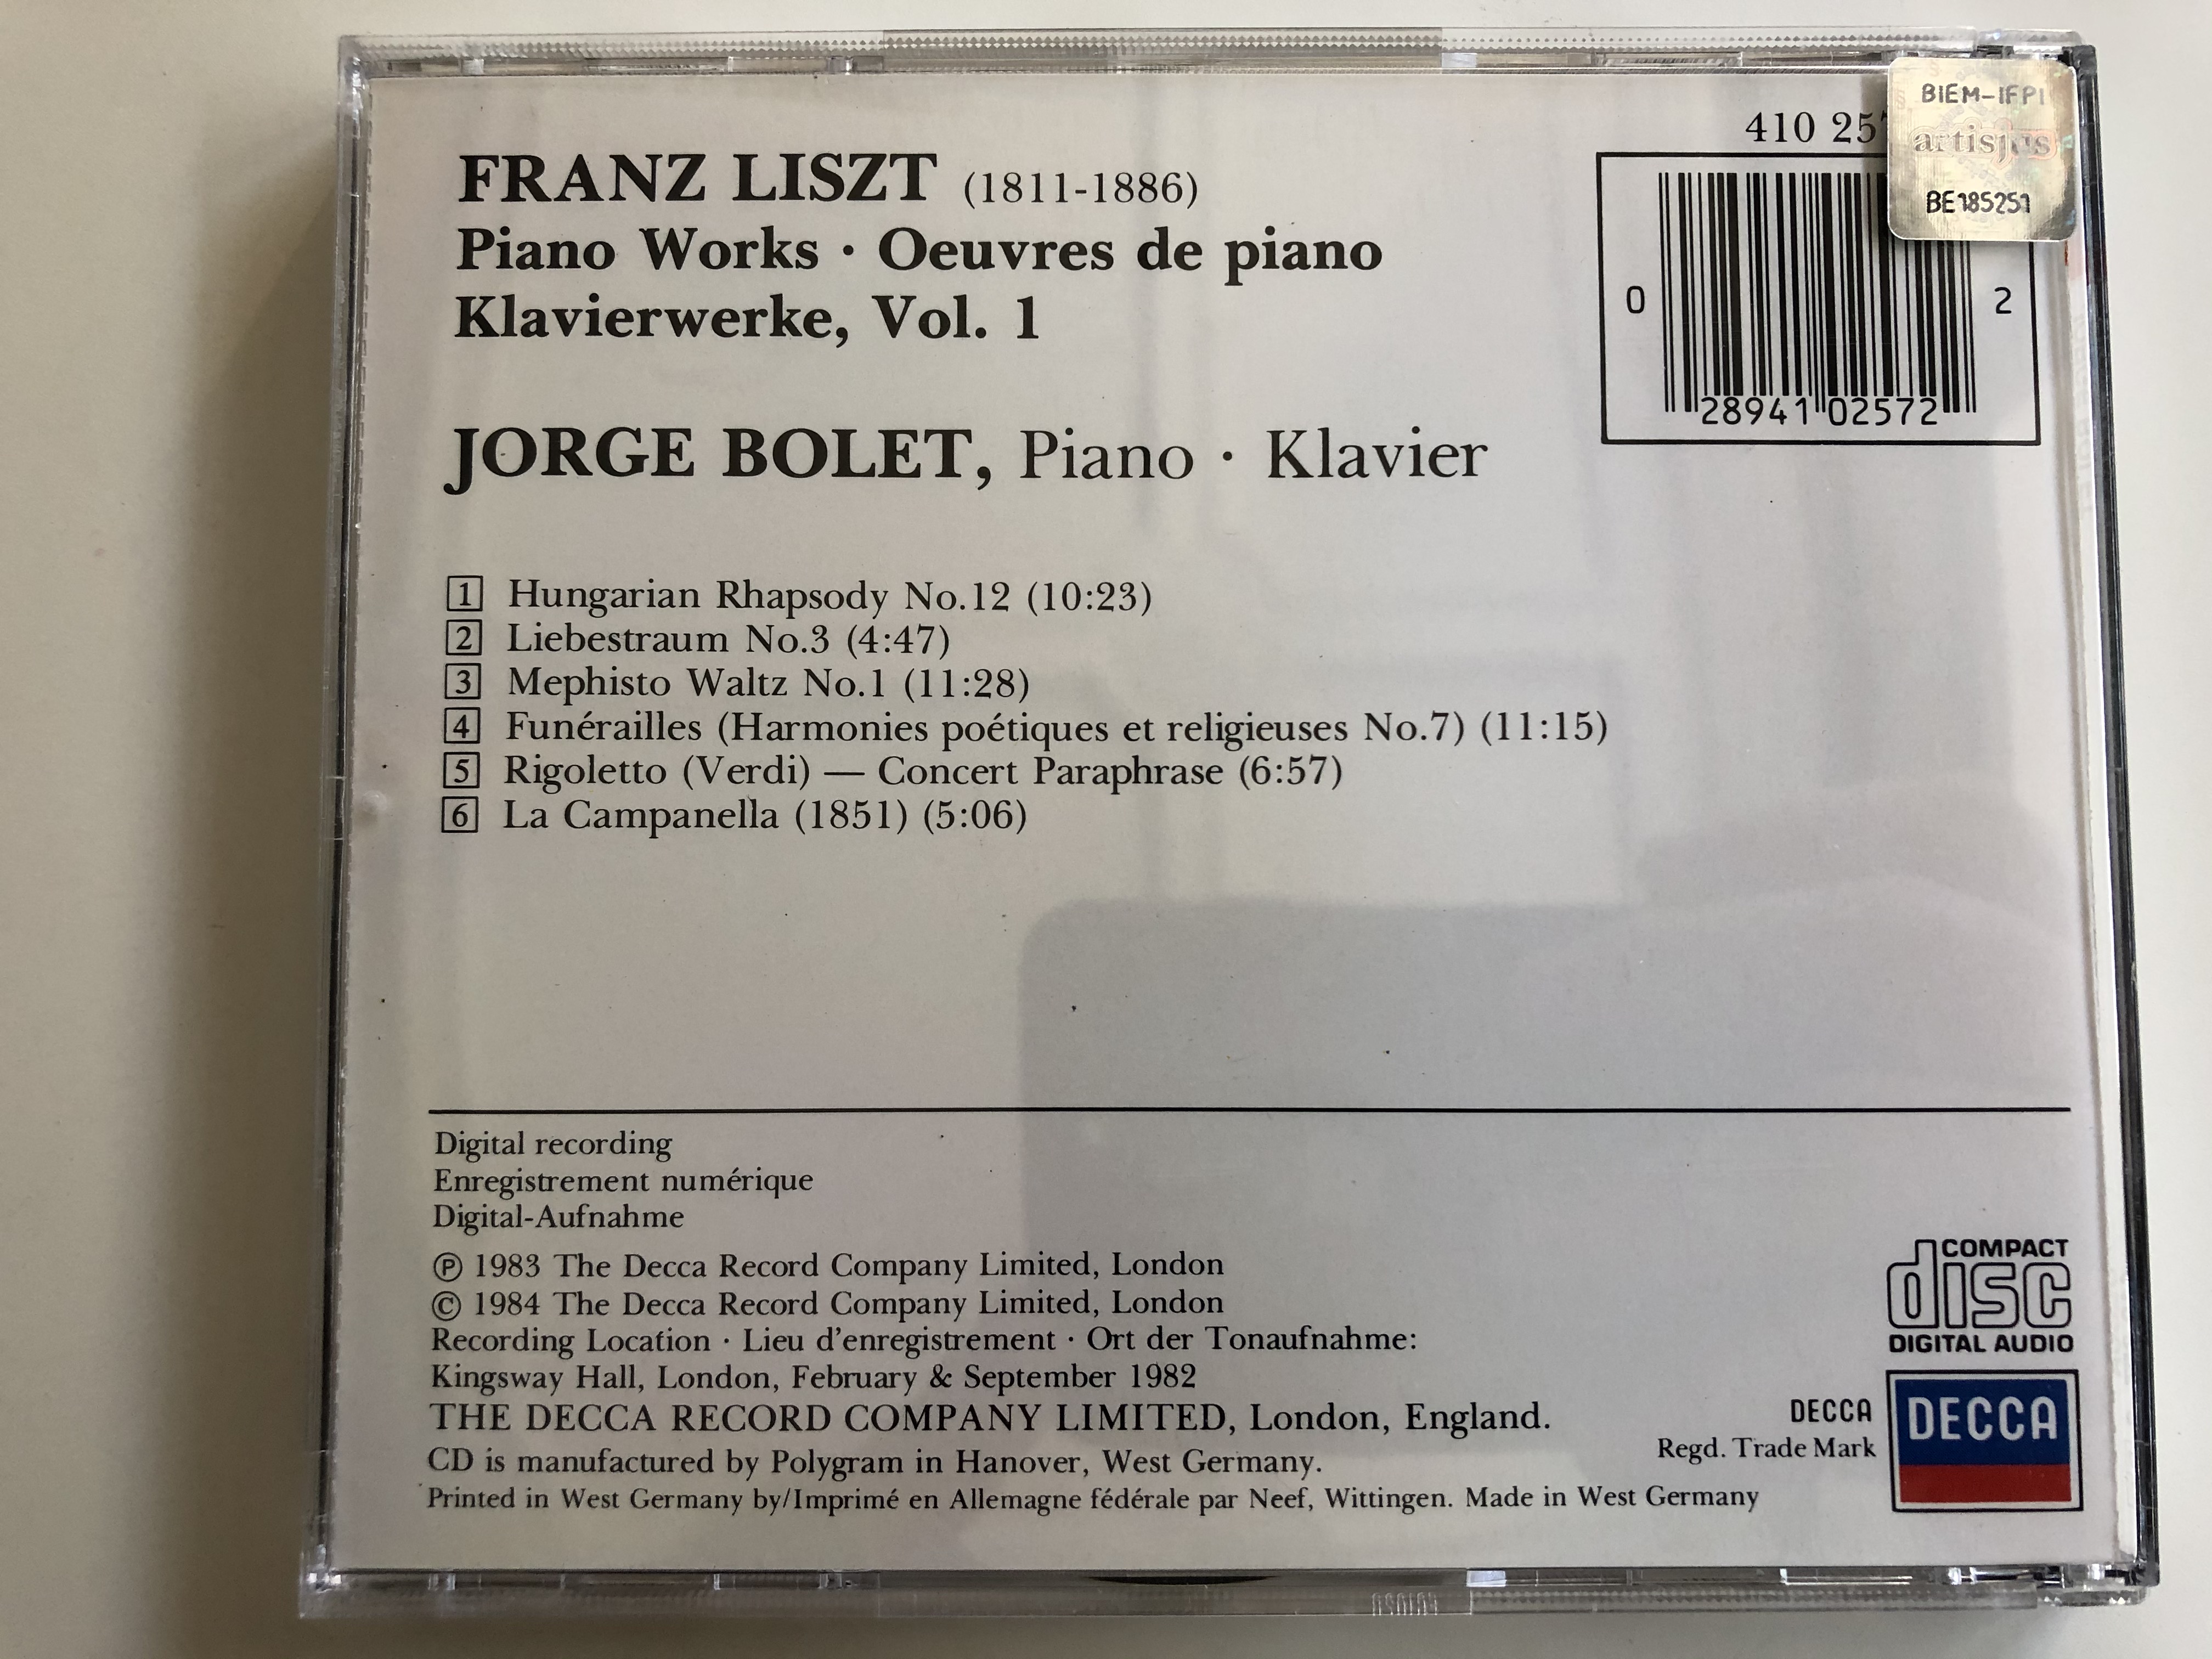 liszt-jorge-bolet-the-piano-works-die-klavierwerke-liebestraum-no.-3-mephisto-waltz-no.-1-rigoletto-paraphrase-hungarian-rhapsody-no.-12-la-campanella-funrailles-decca-audio-cd-1983-6-.jpg